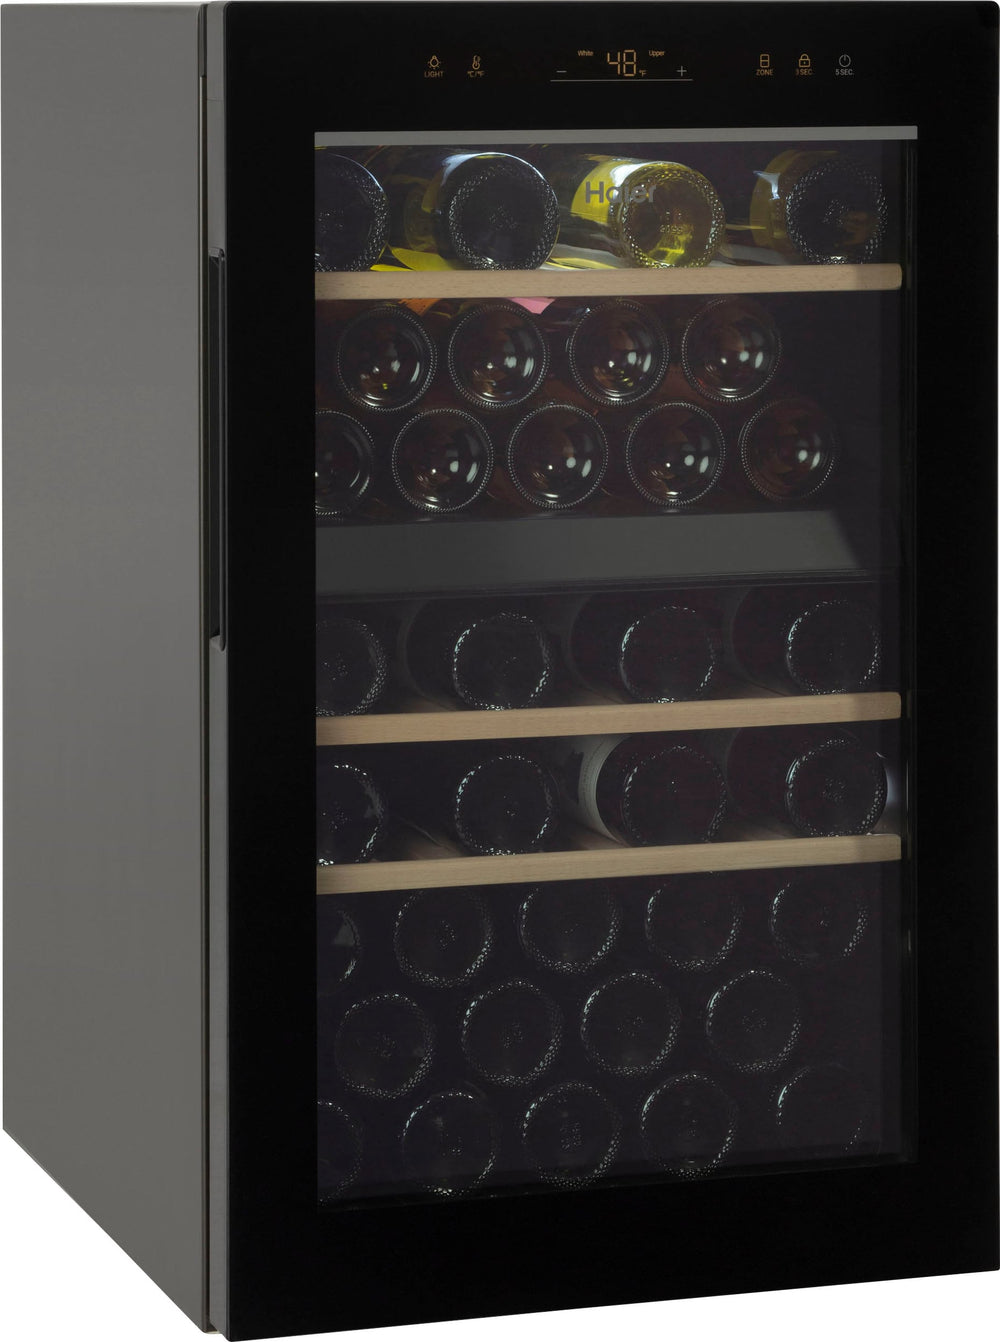 Haier - 44-Bottle Wine Cooler - Black glass_1